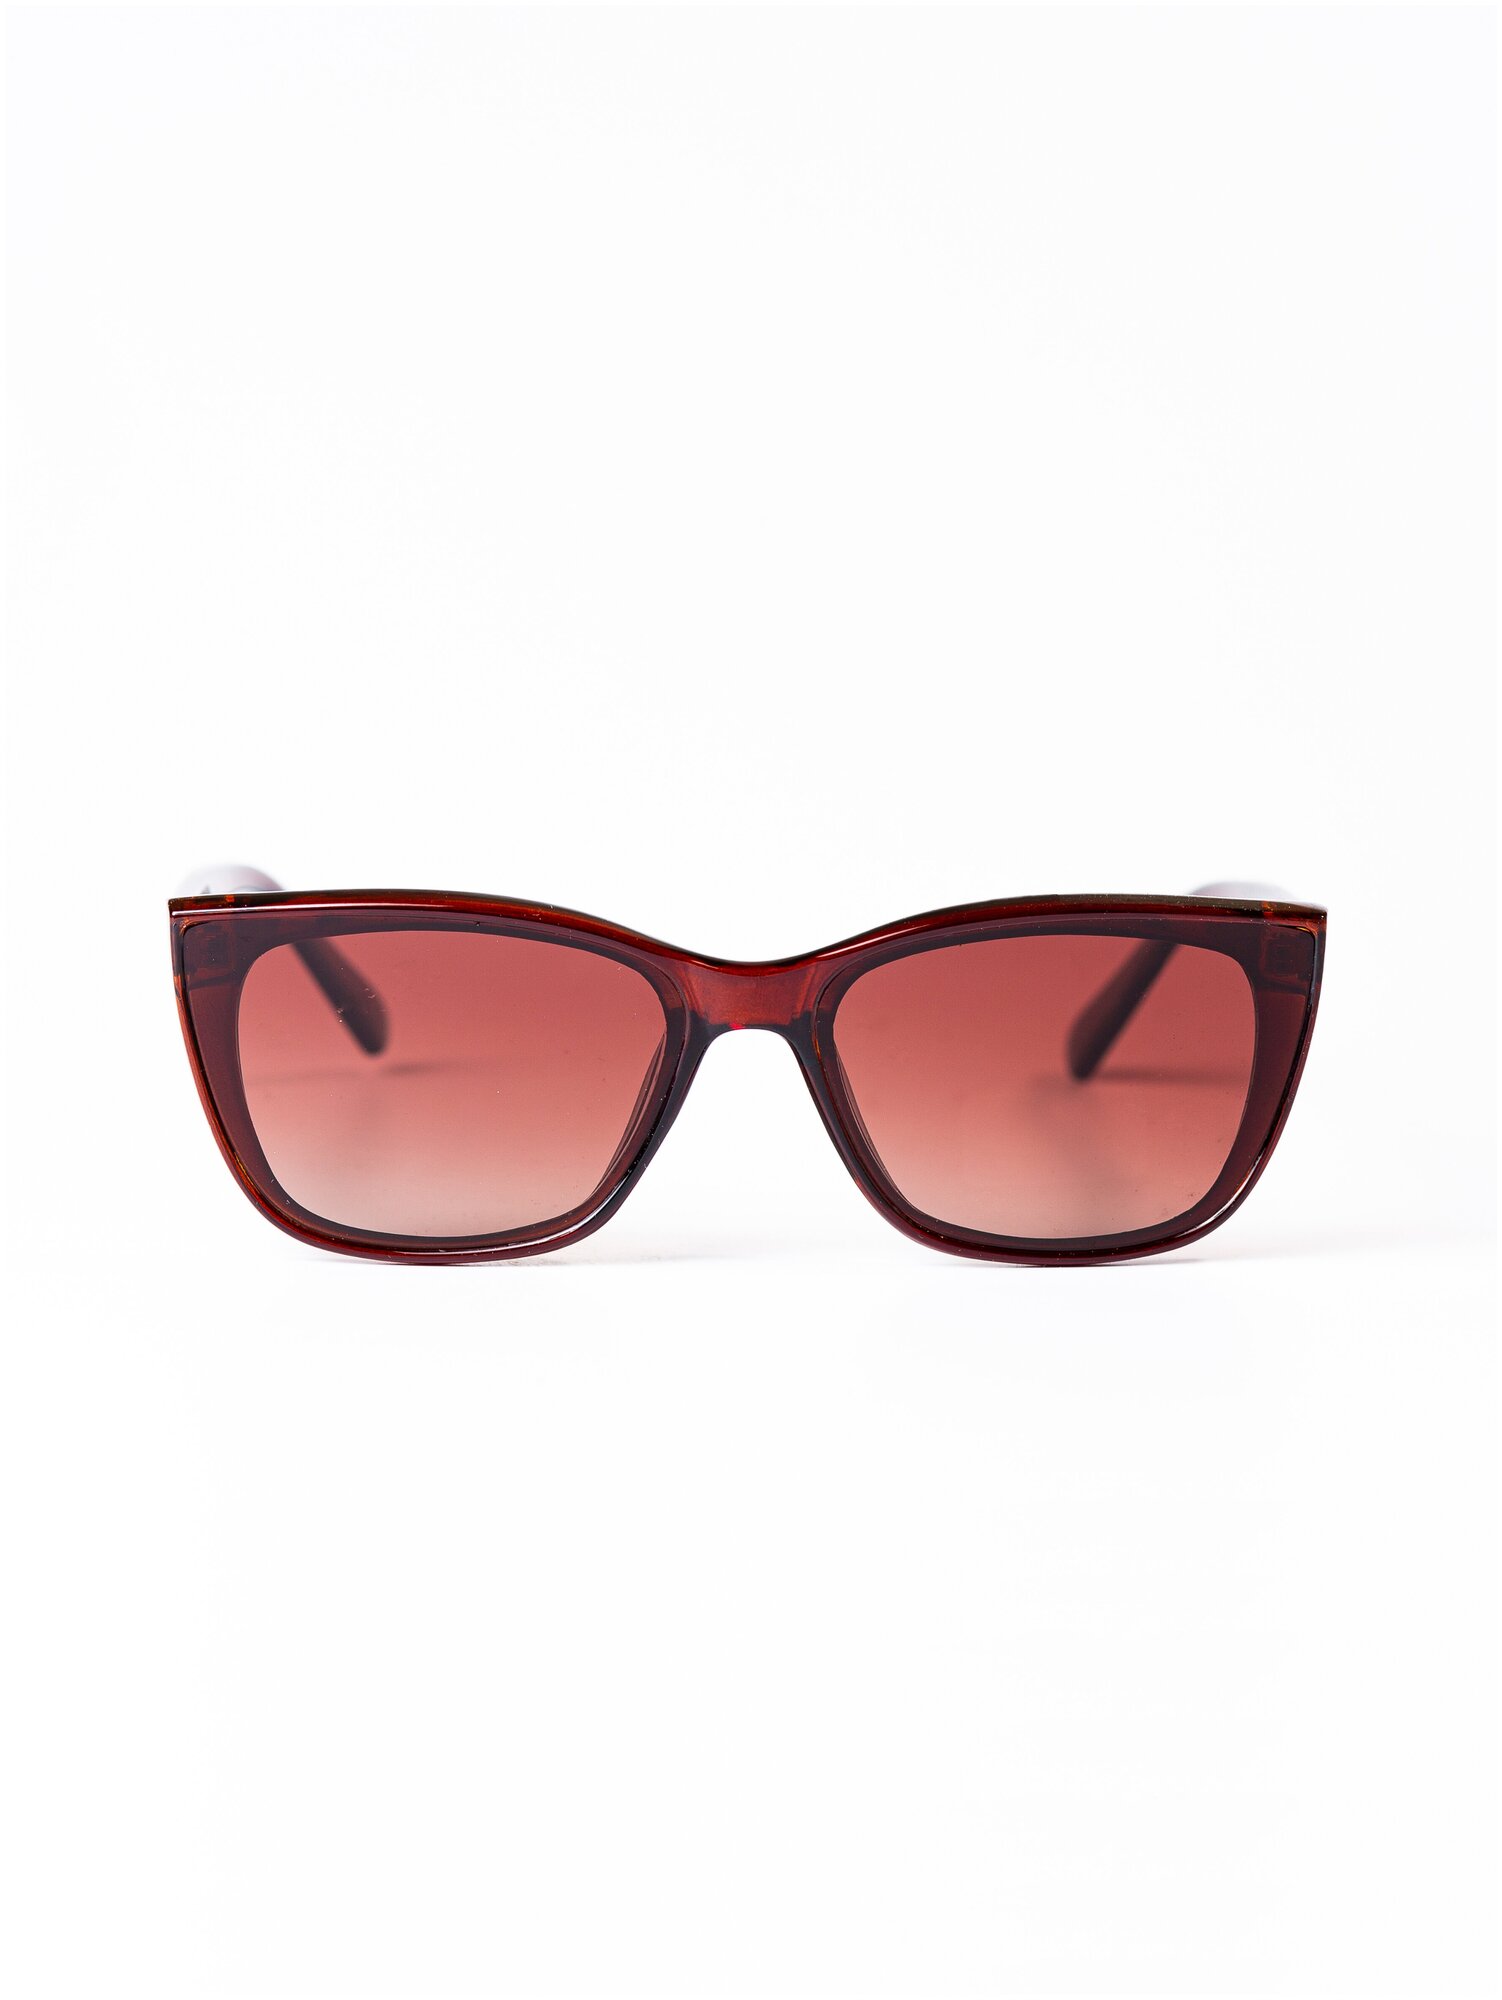 Солнцезащитные очки женские / Оправа кошачий глаз / Стильные очки / Ультрафиолетовый фильтр / UV400 / Чехол в подарок / Модный аксессуар/230322251